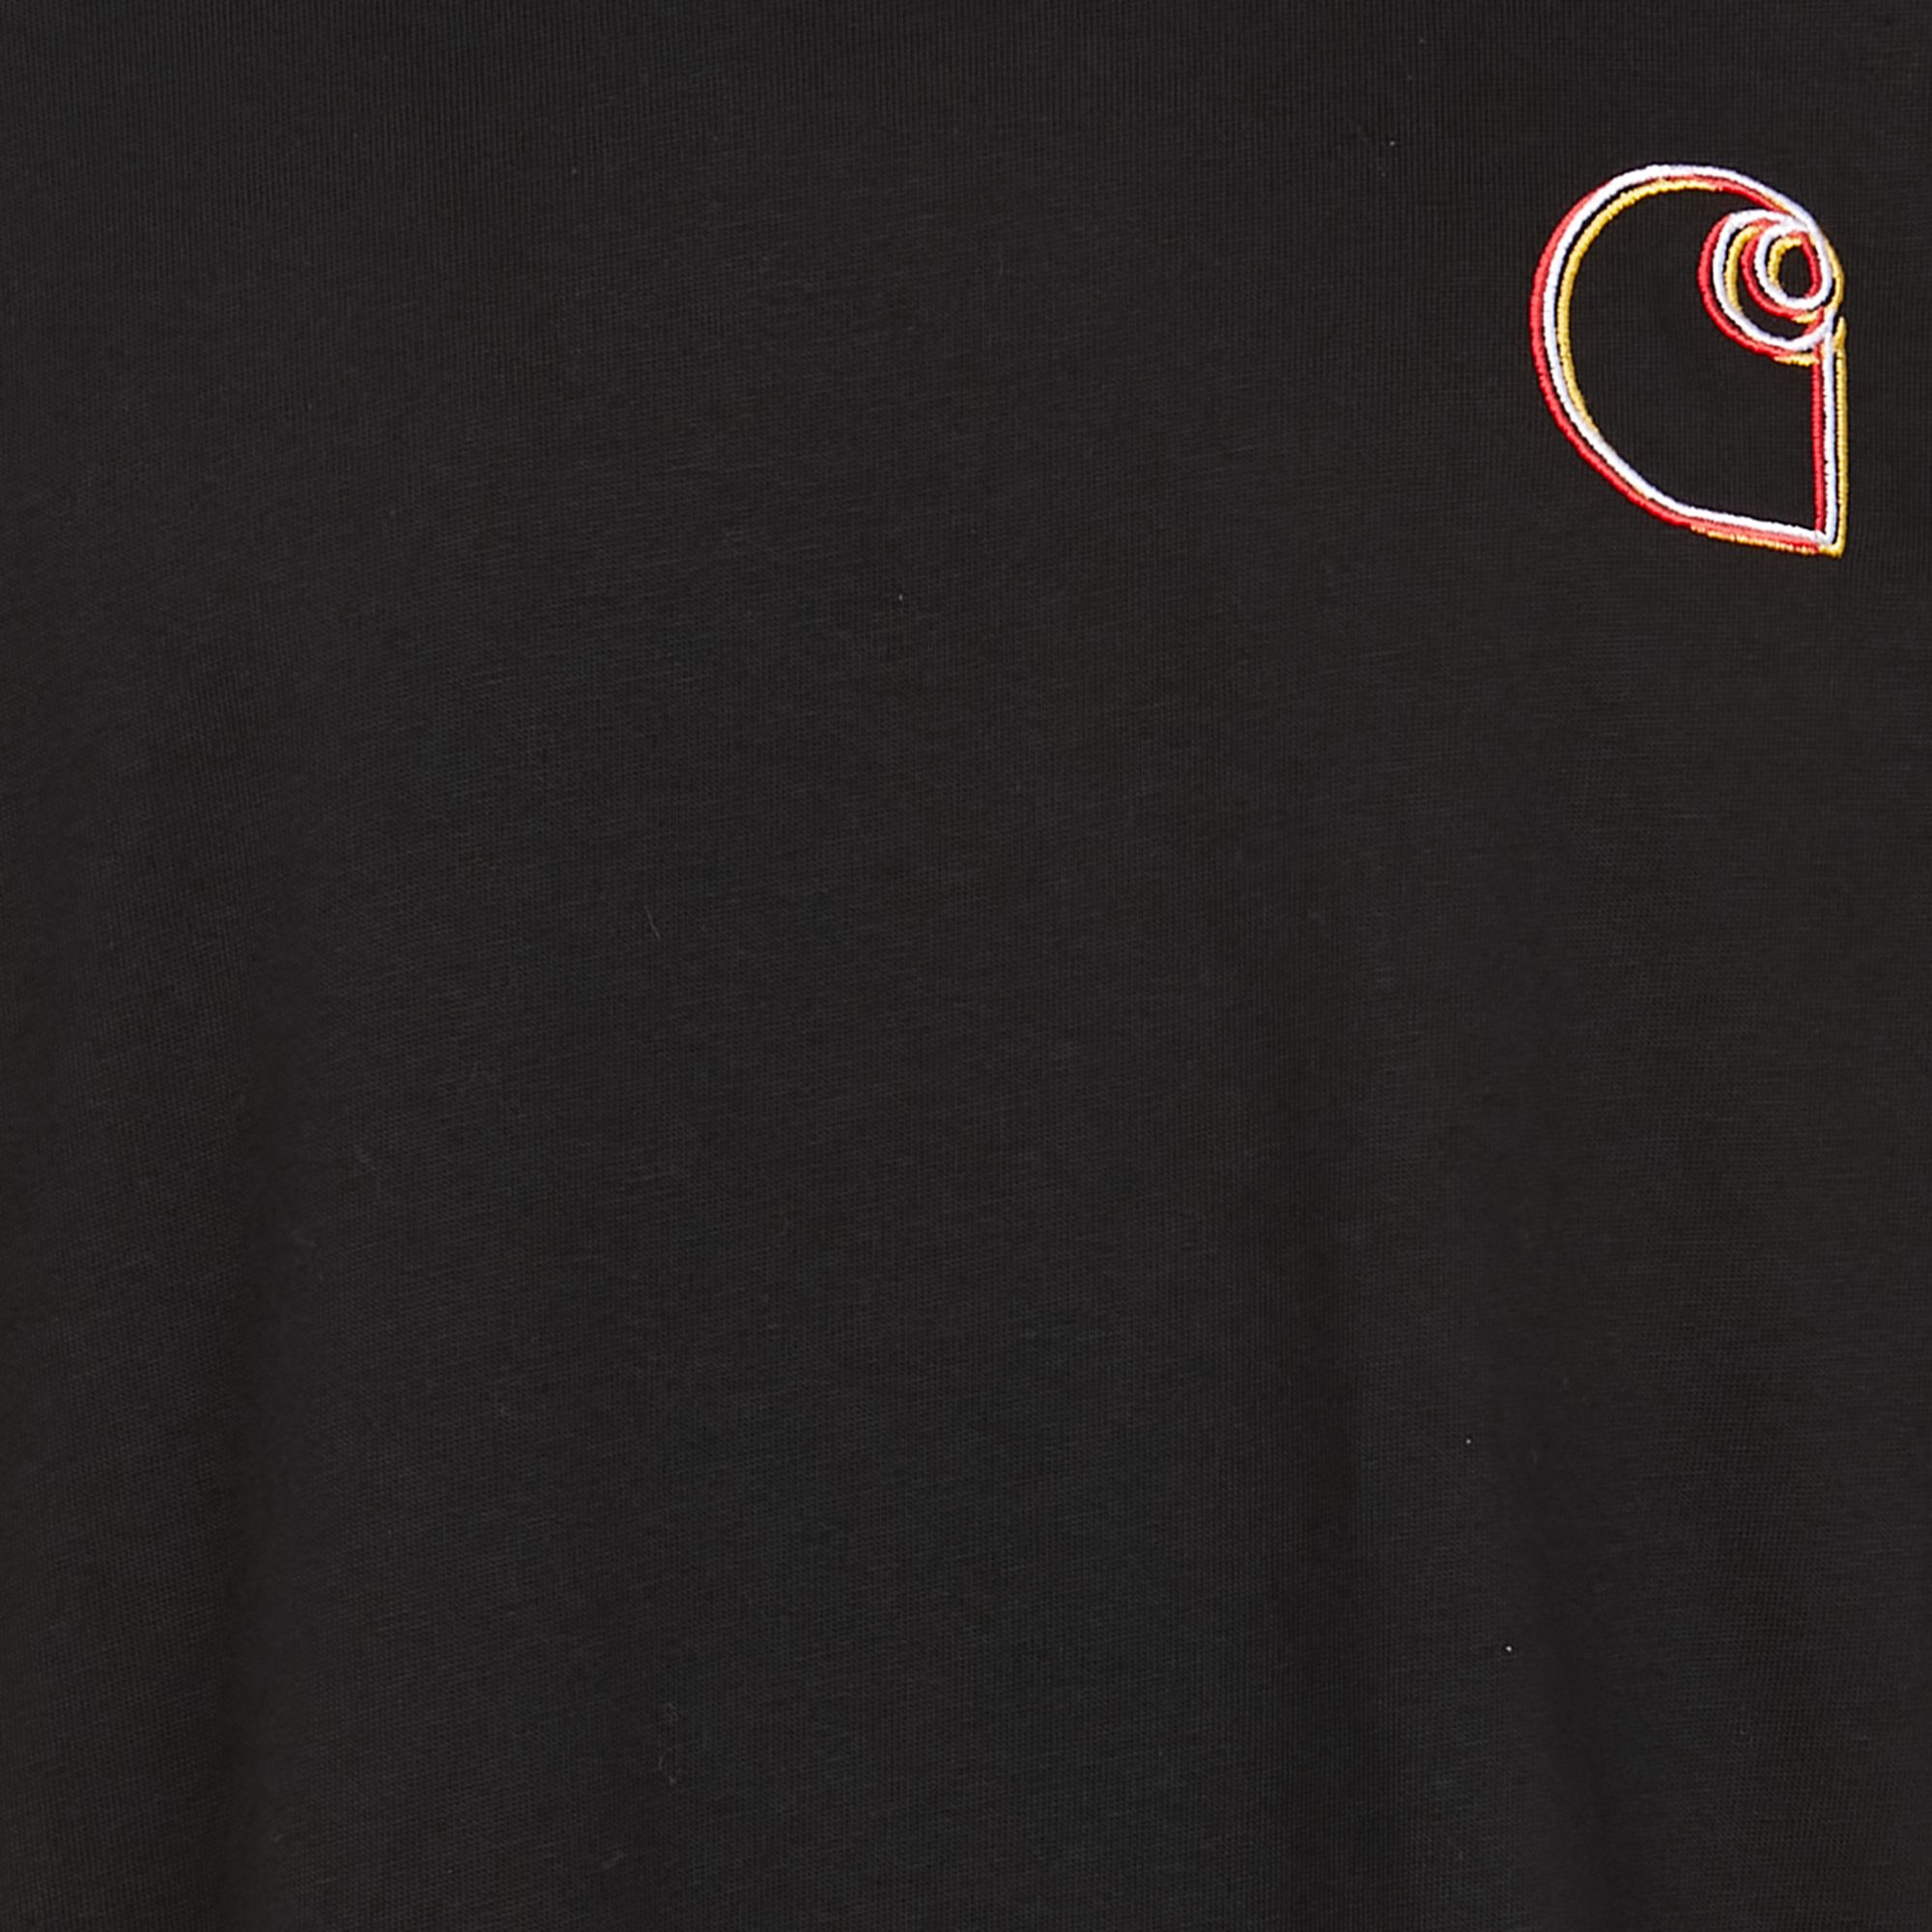 Mujer Ropa de Camisetas y tops de Camisetas Camiseta con bordado y logo Carhartt WIP de Algodón de color Negro 